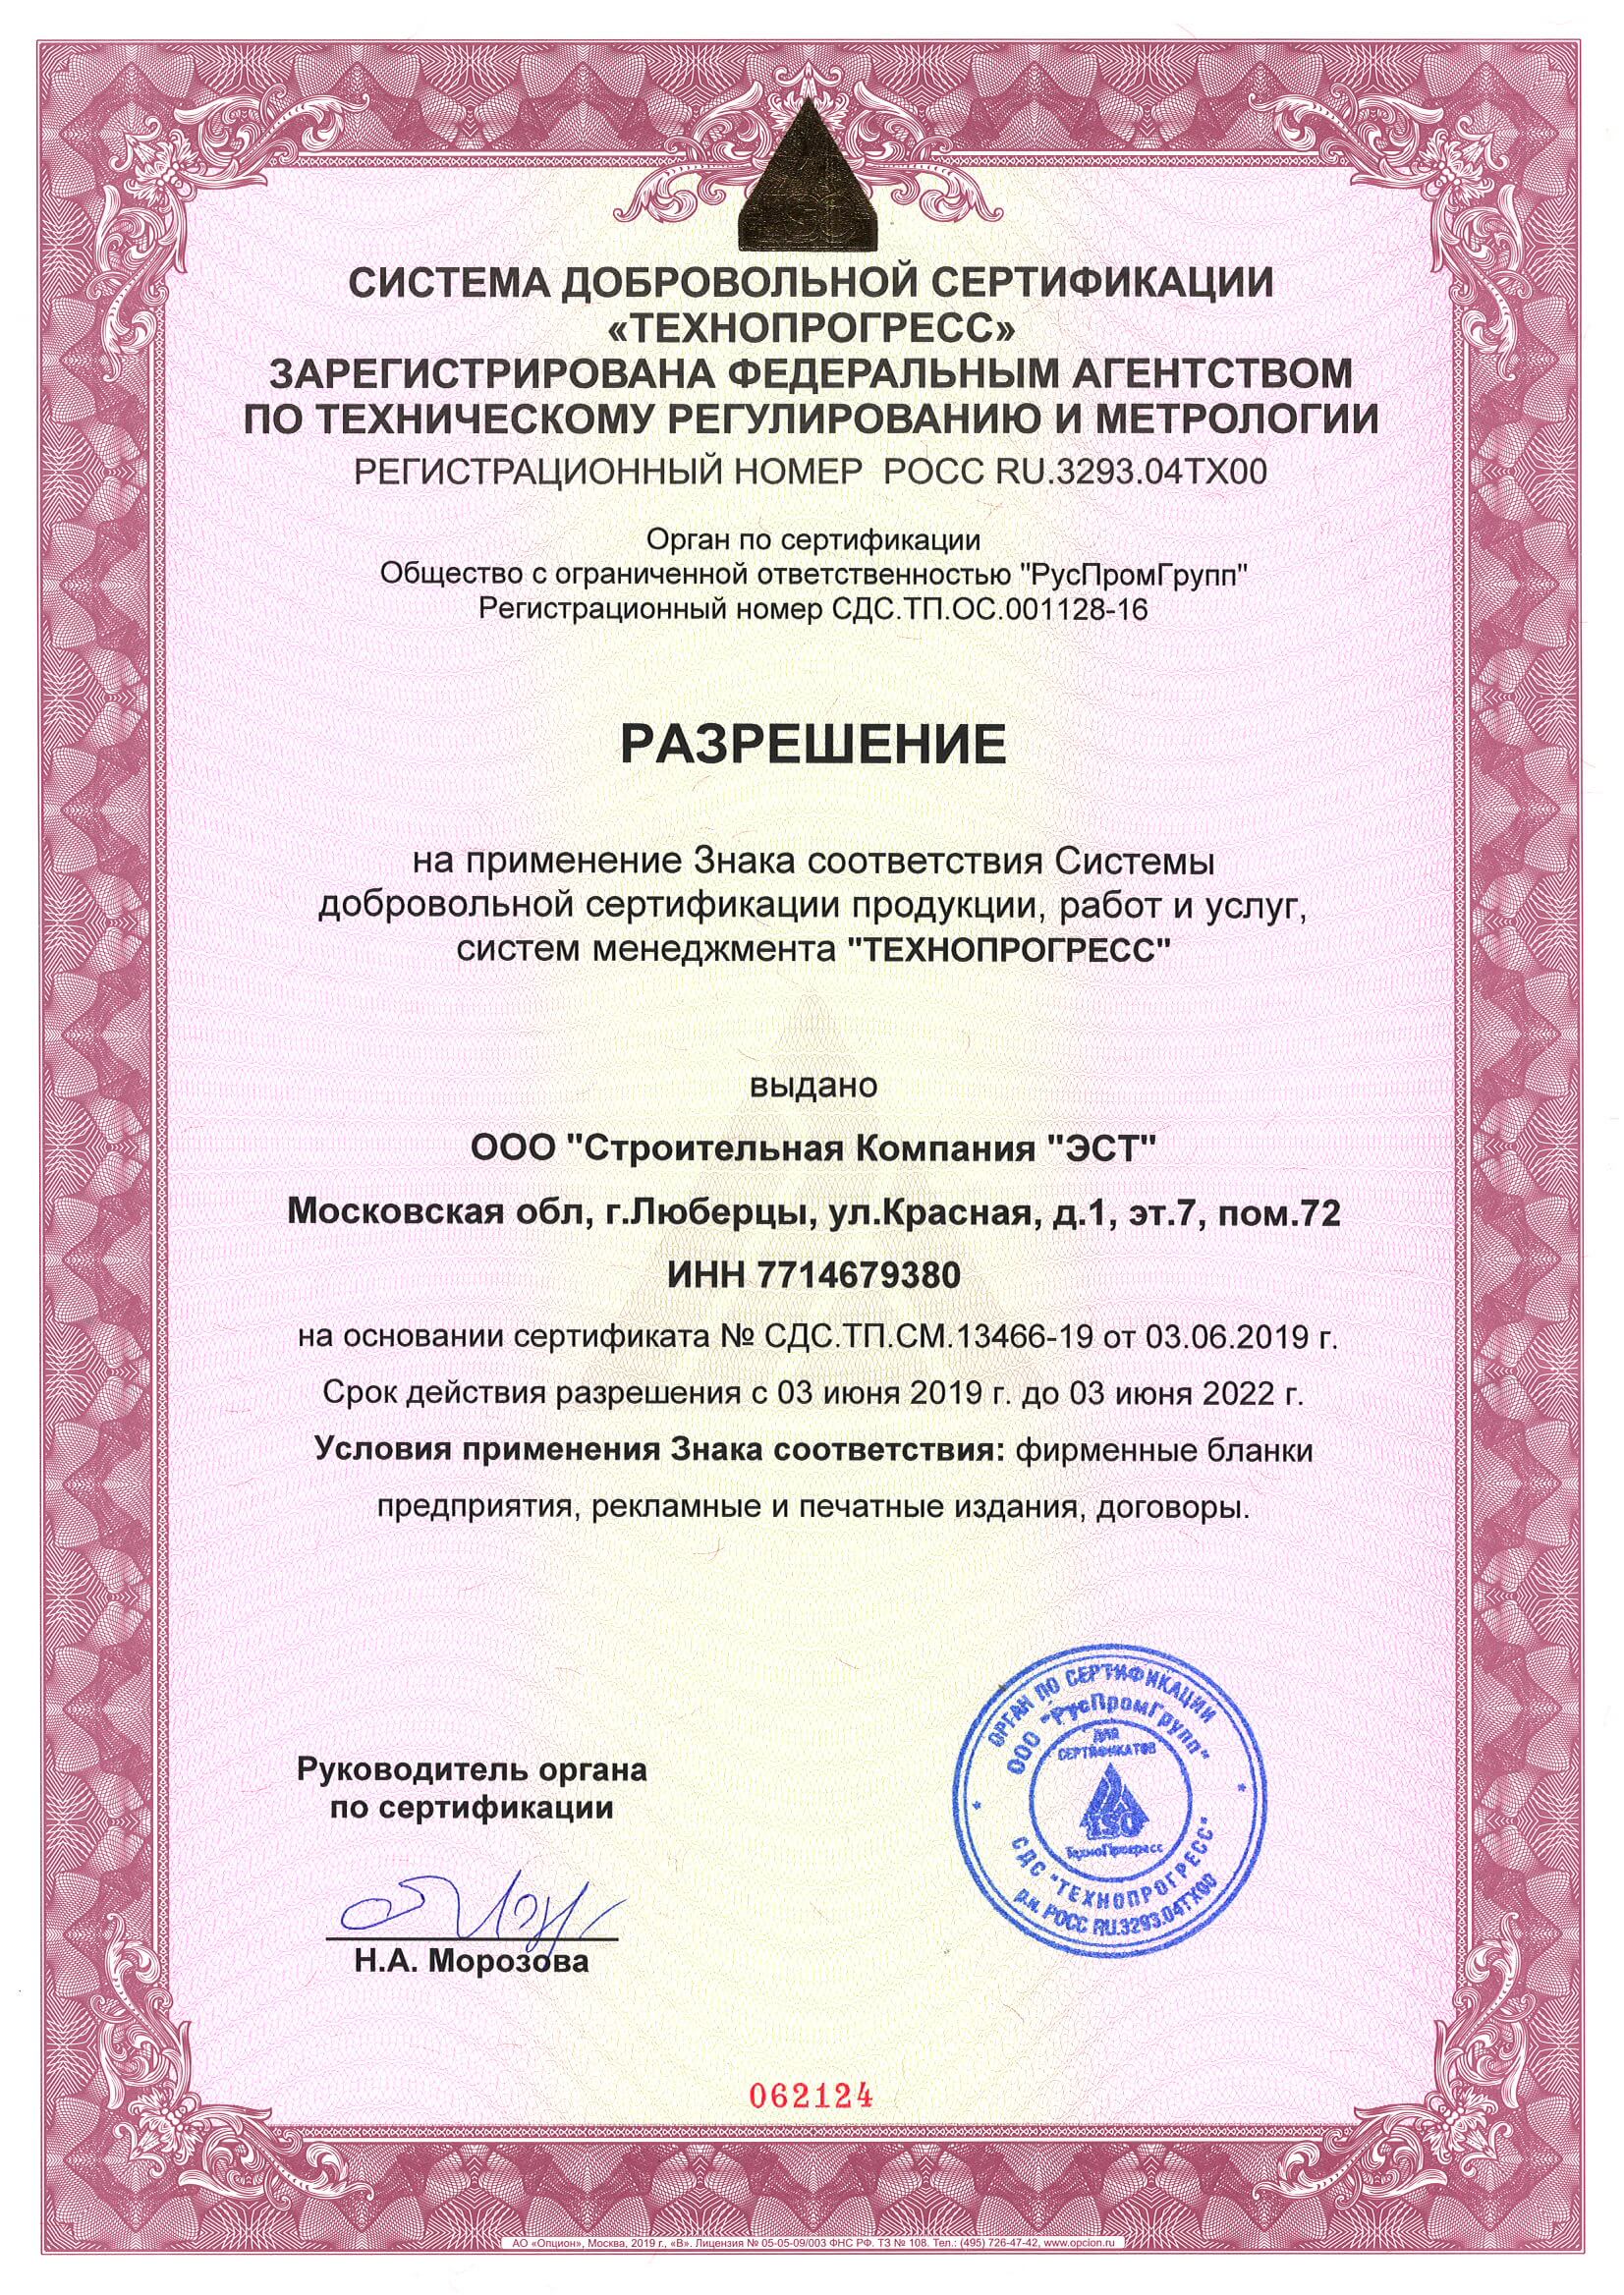 Сертификат соответствия системы менеджмента труда и охраны безопасности (2)_Страница_2